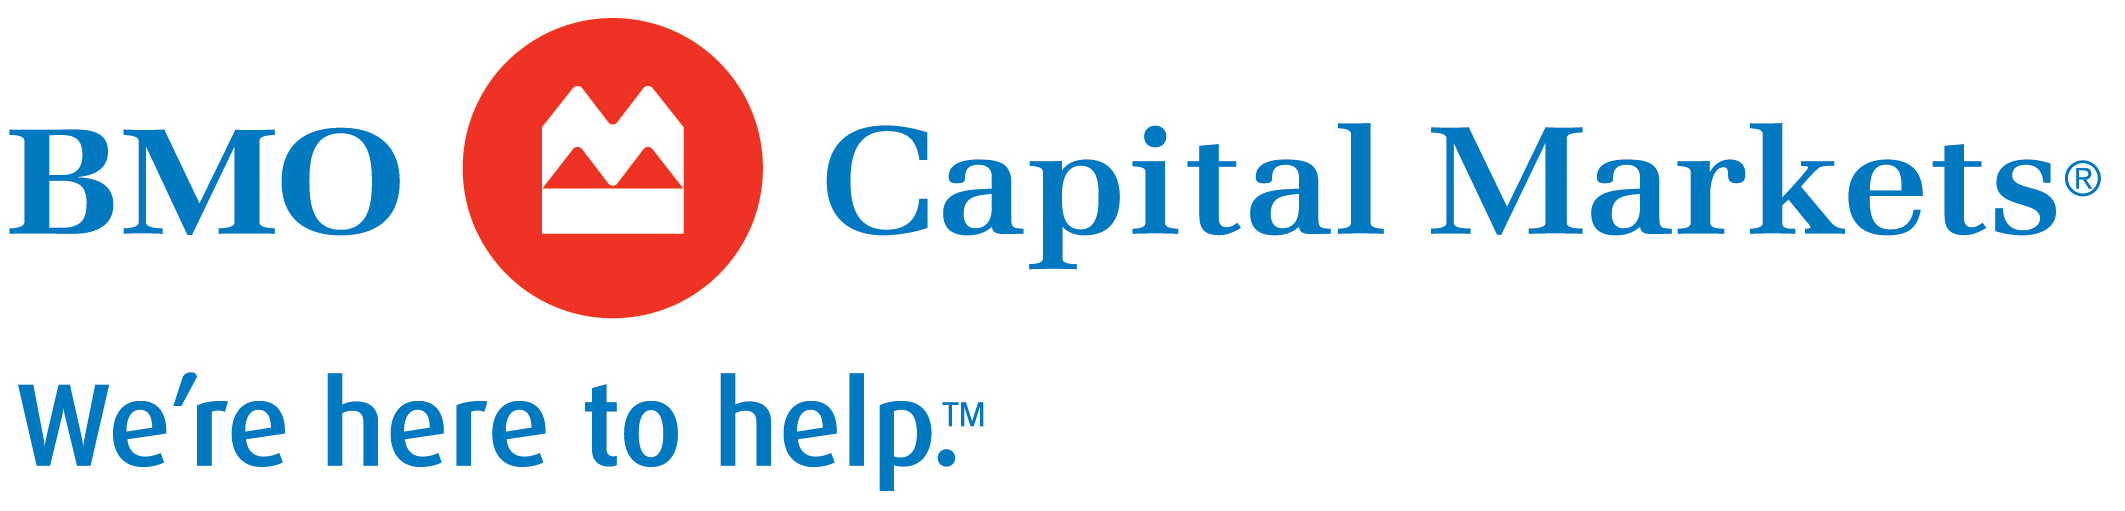 BMO Capital Markets logo